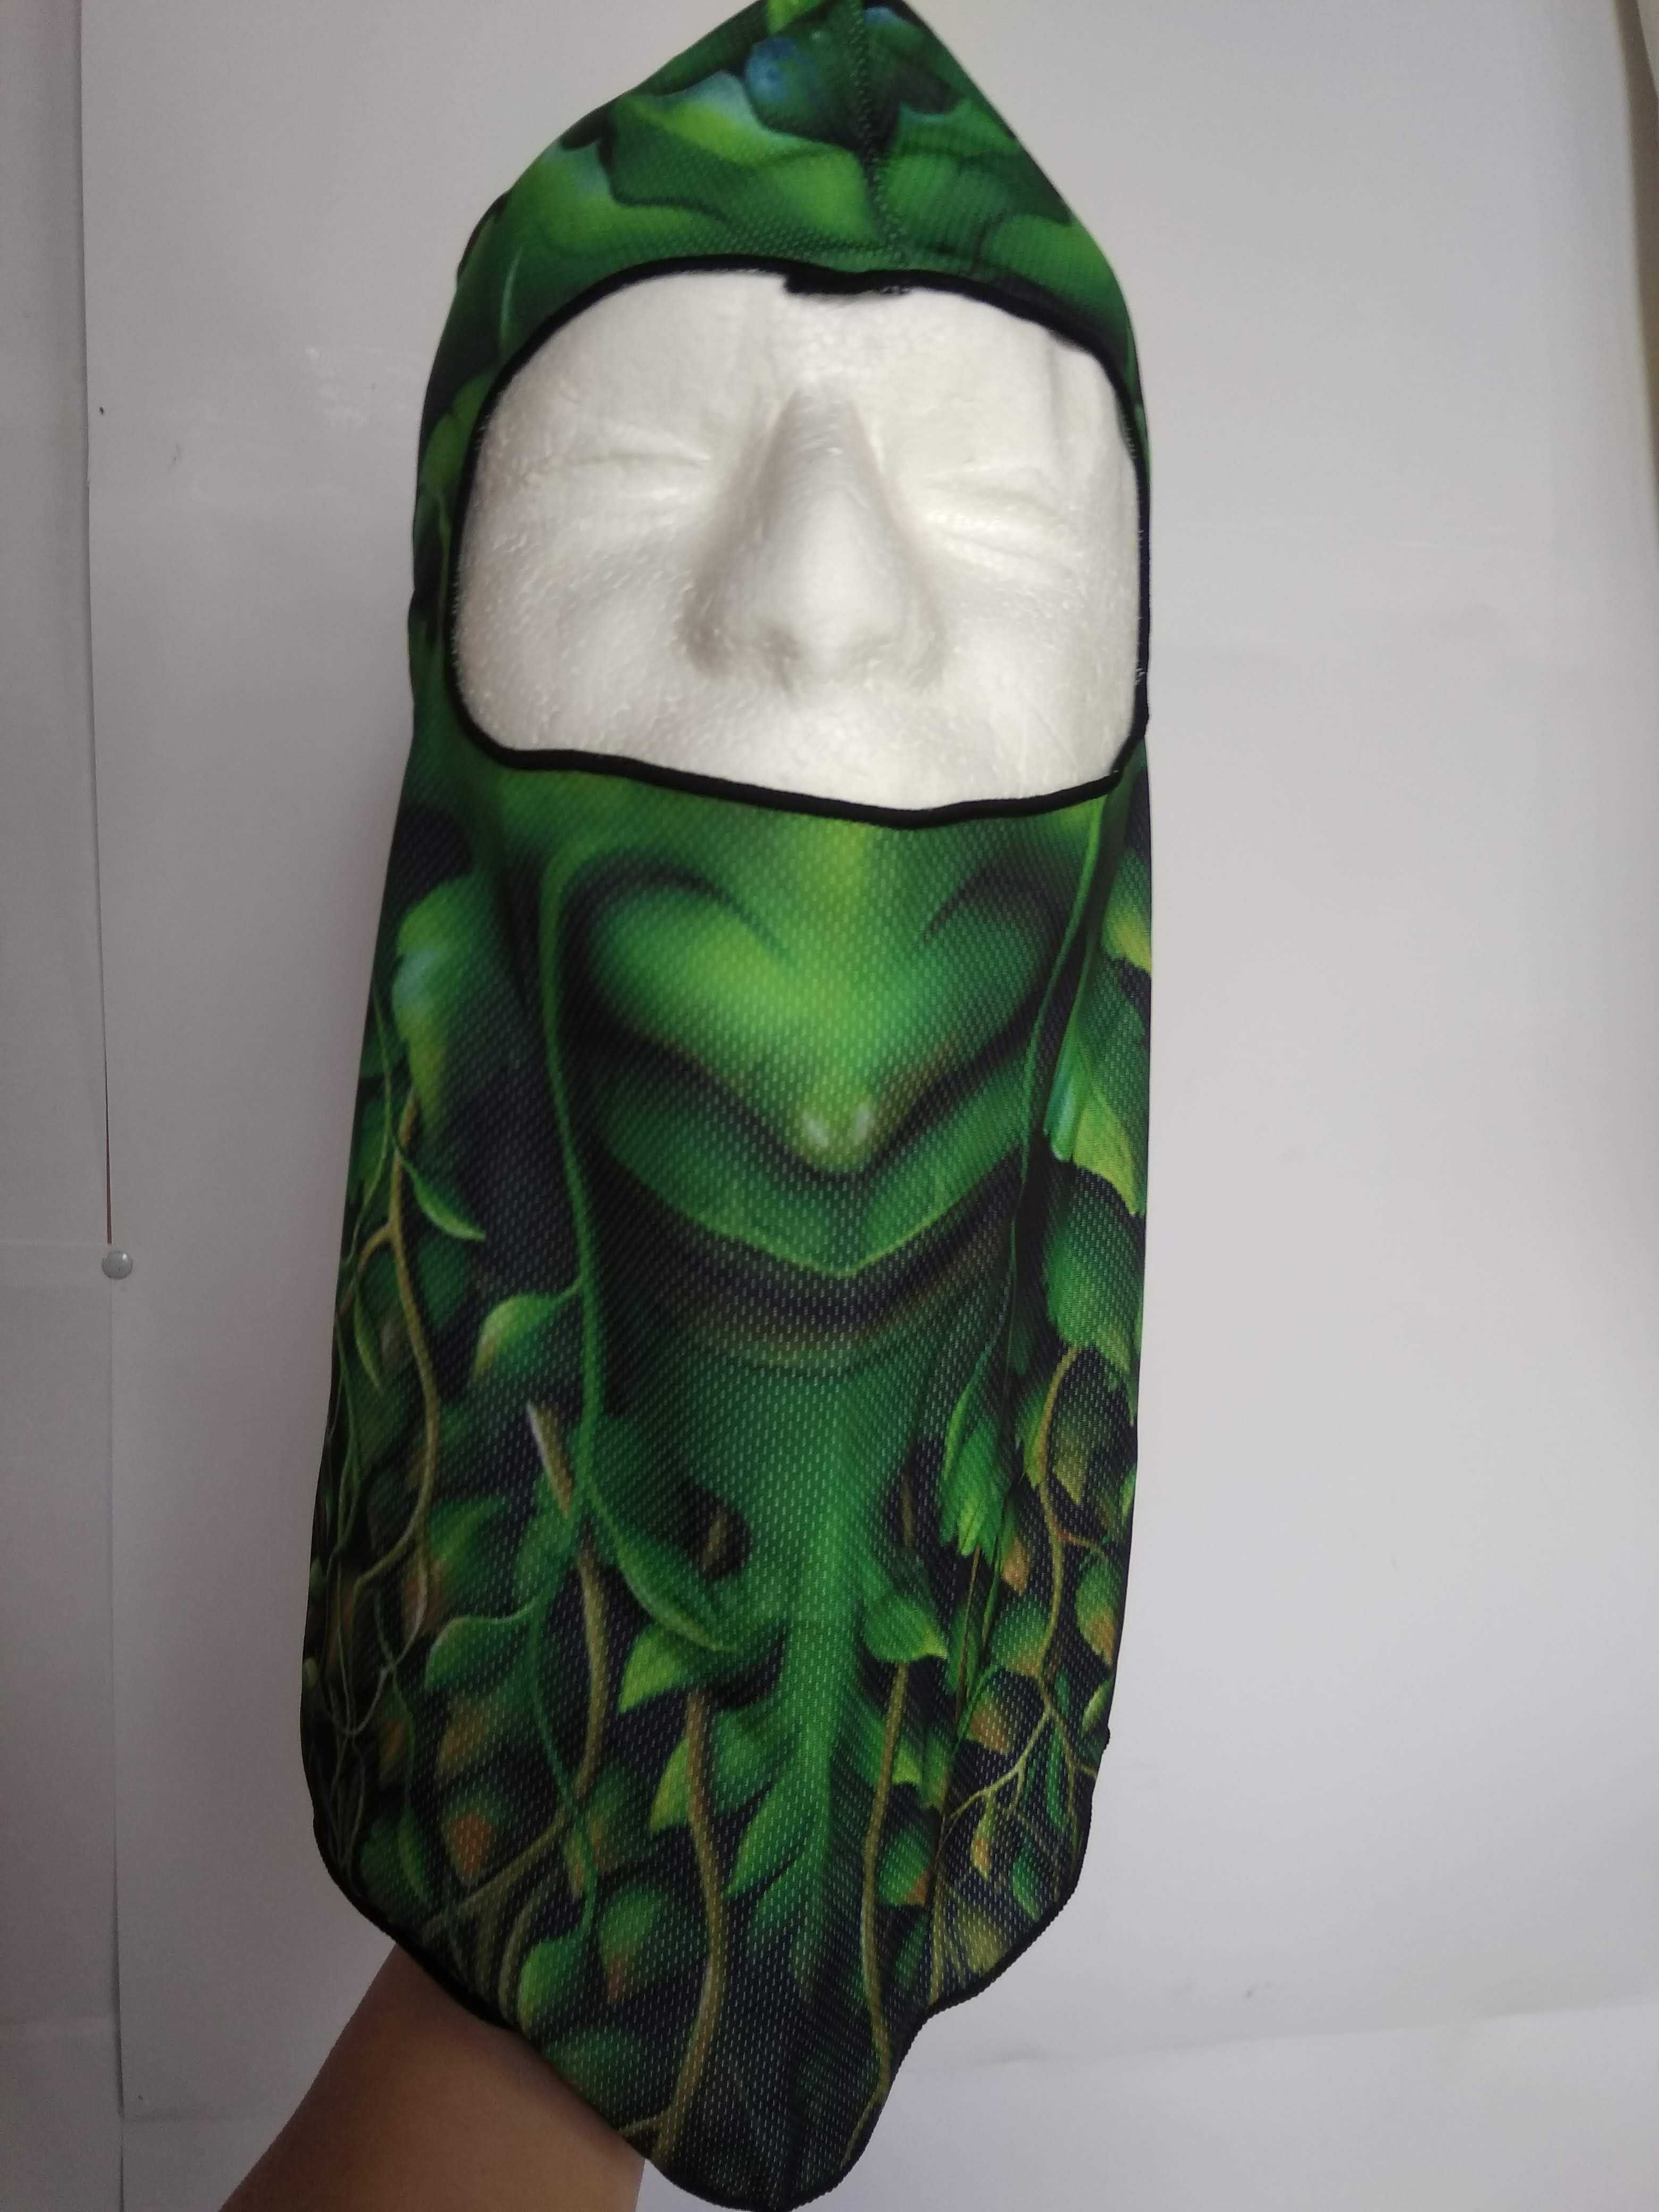 Леший маска лесное чудище зеленая балаклава